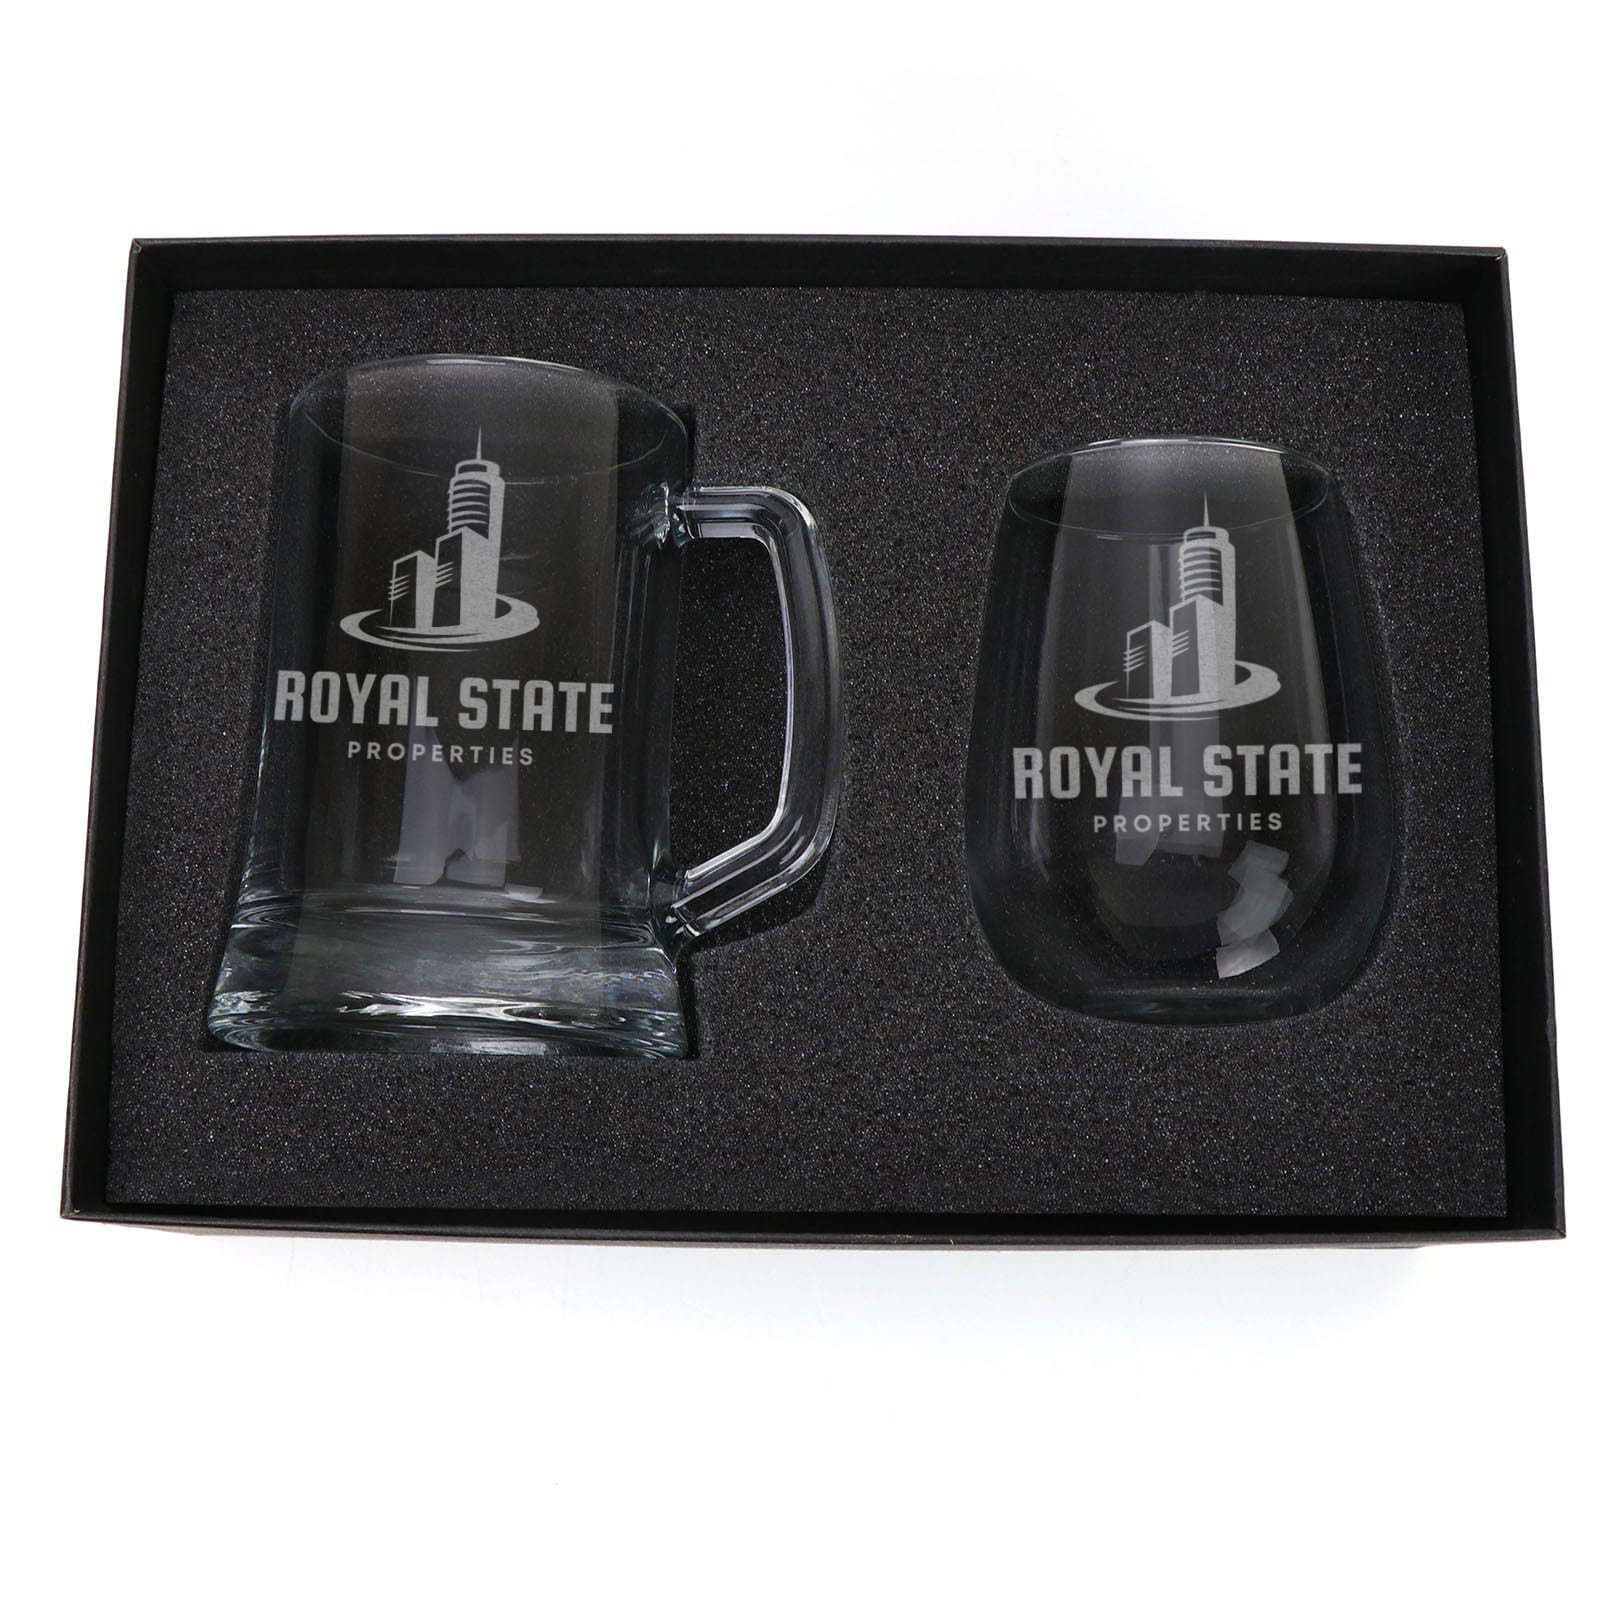 Drinkware Custom Engraved Double Beer Mug Corporate Glass Set beer